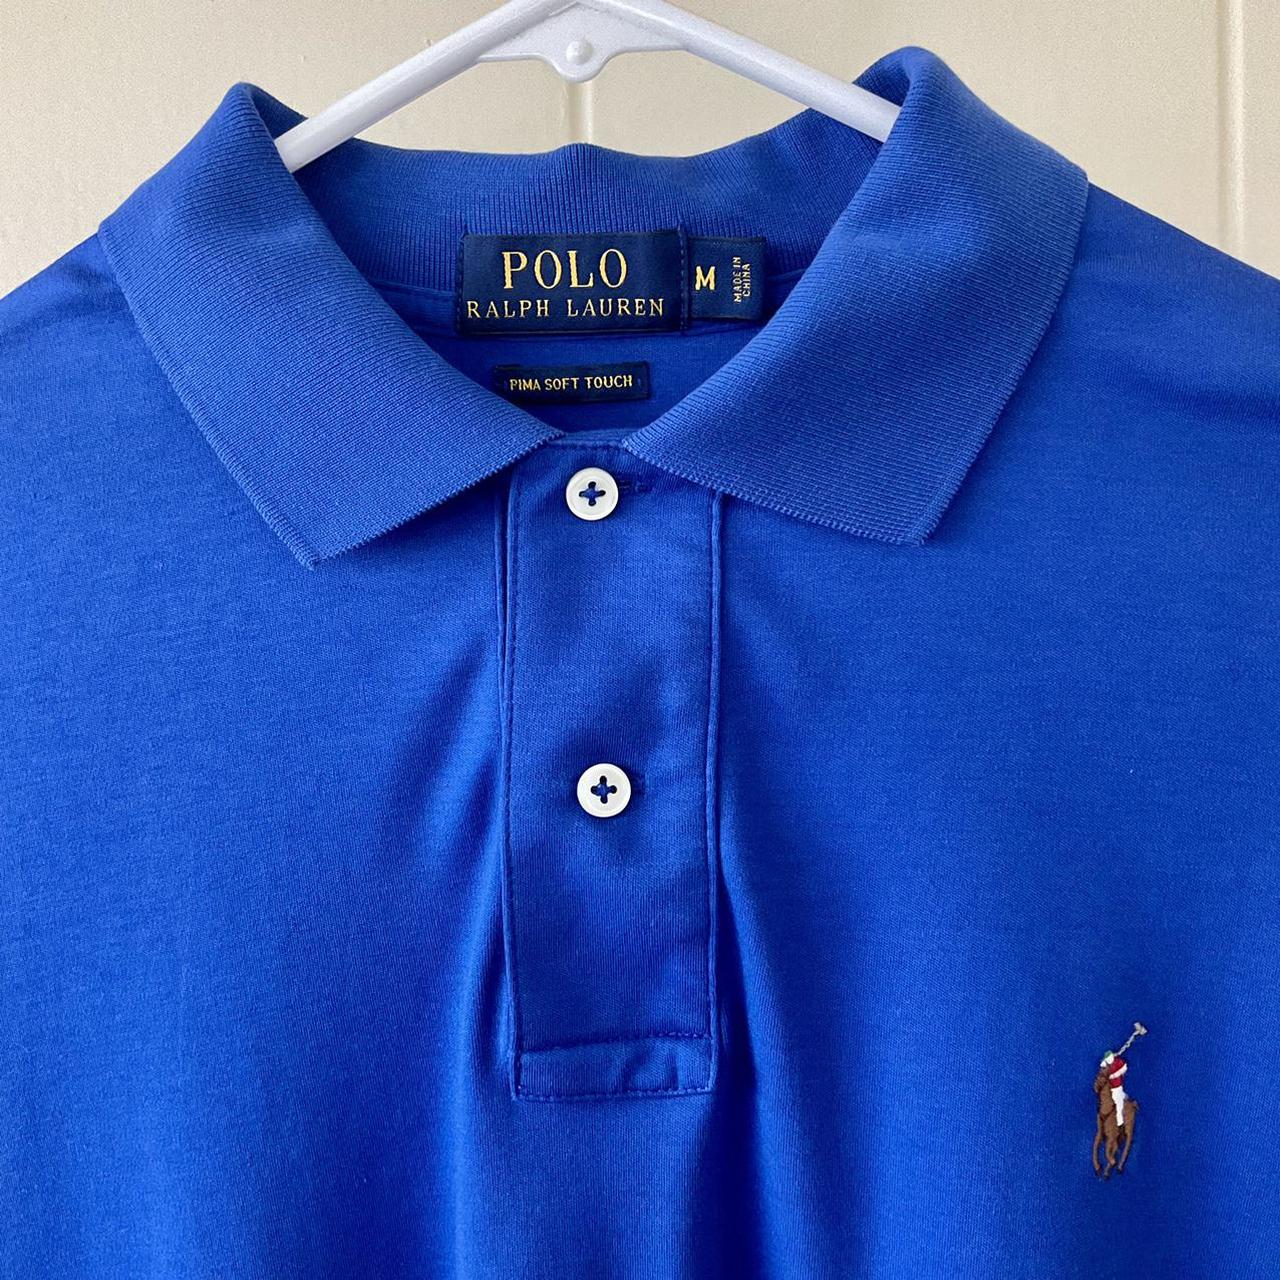 Polo Ralph Lauren Men's Pima Soft Touch Polo Shirt... - Depop